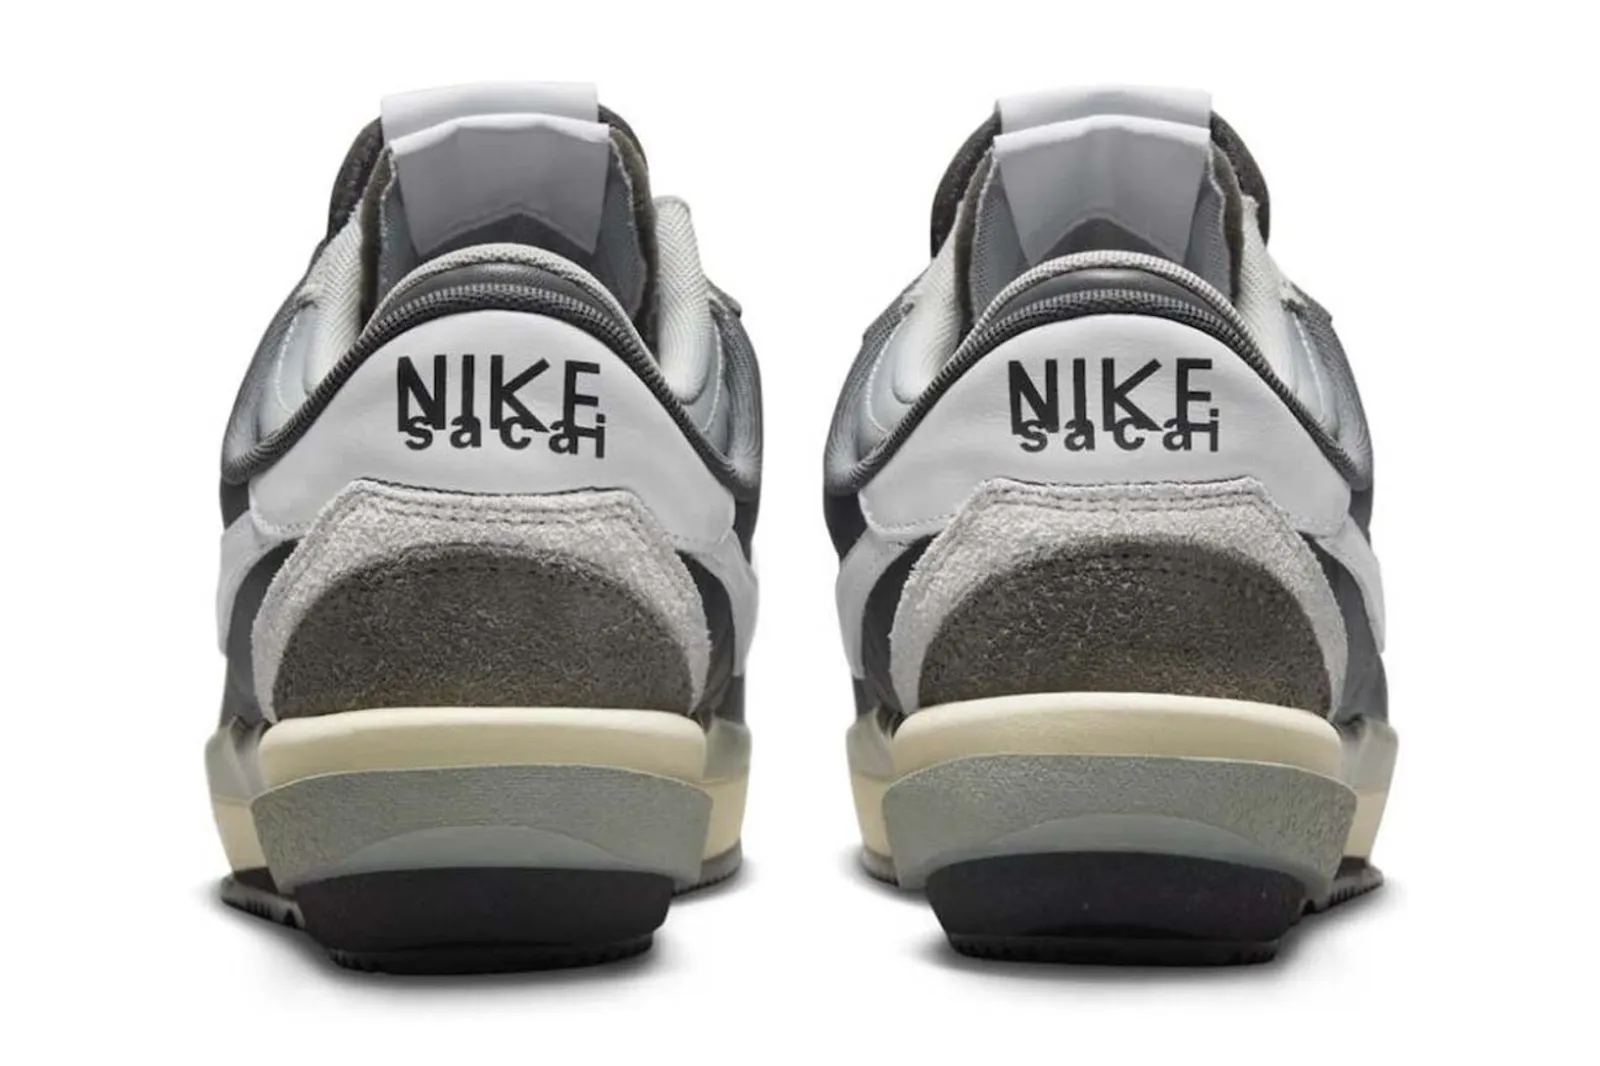 Intip Detail Sneaker sacai x Nike Cortez 4.0 dalam Colorway 'Grey'